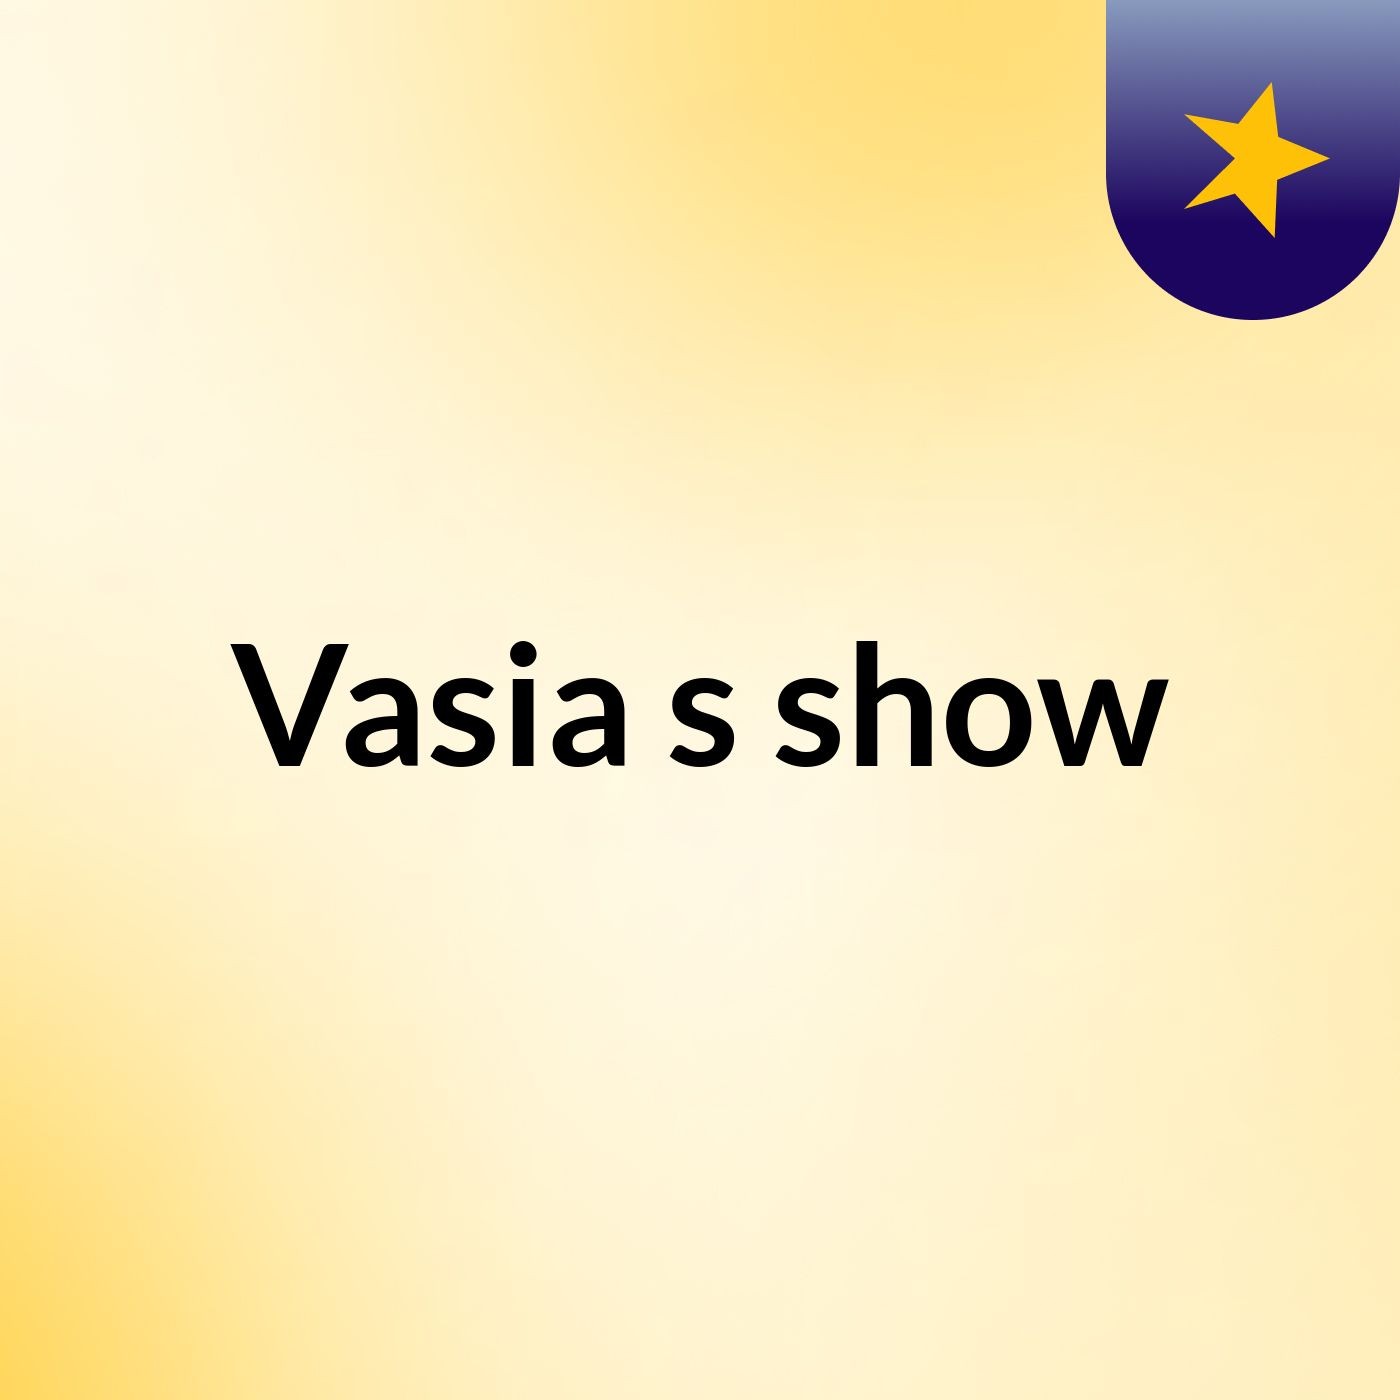 Vasia's show